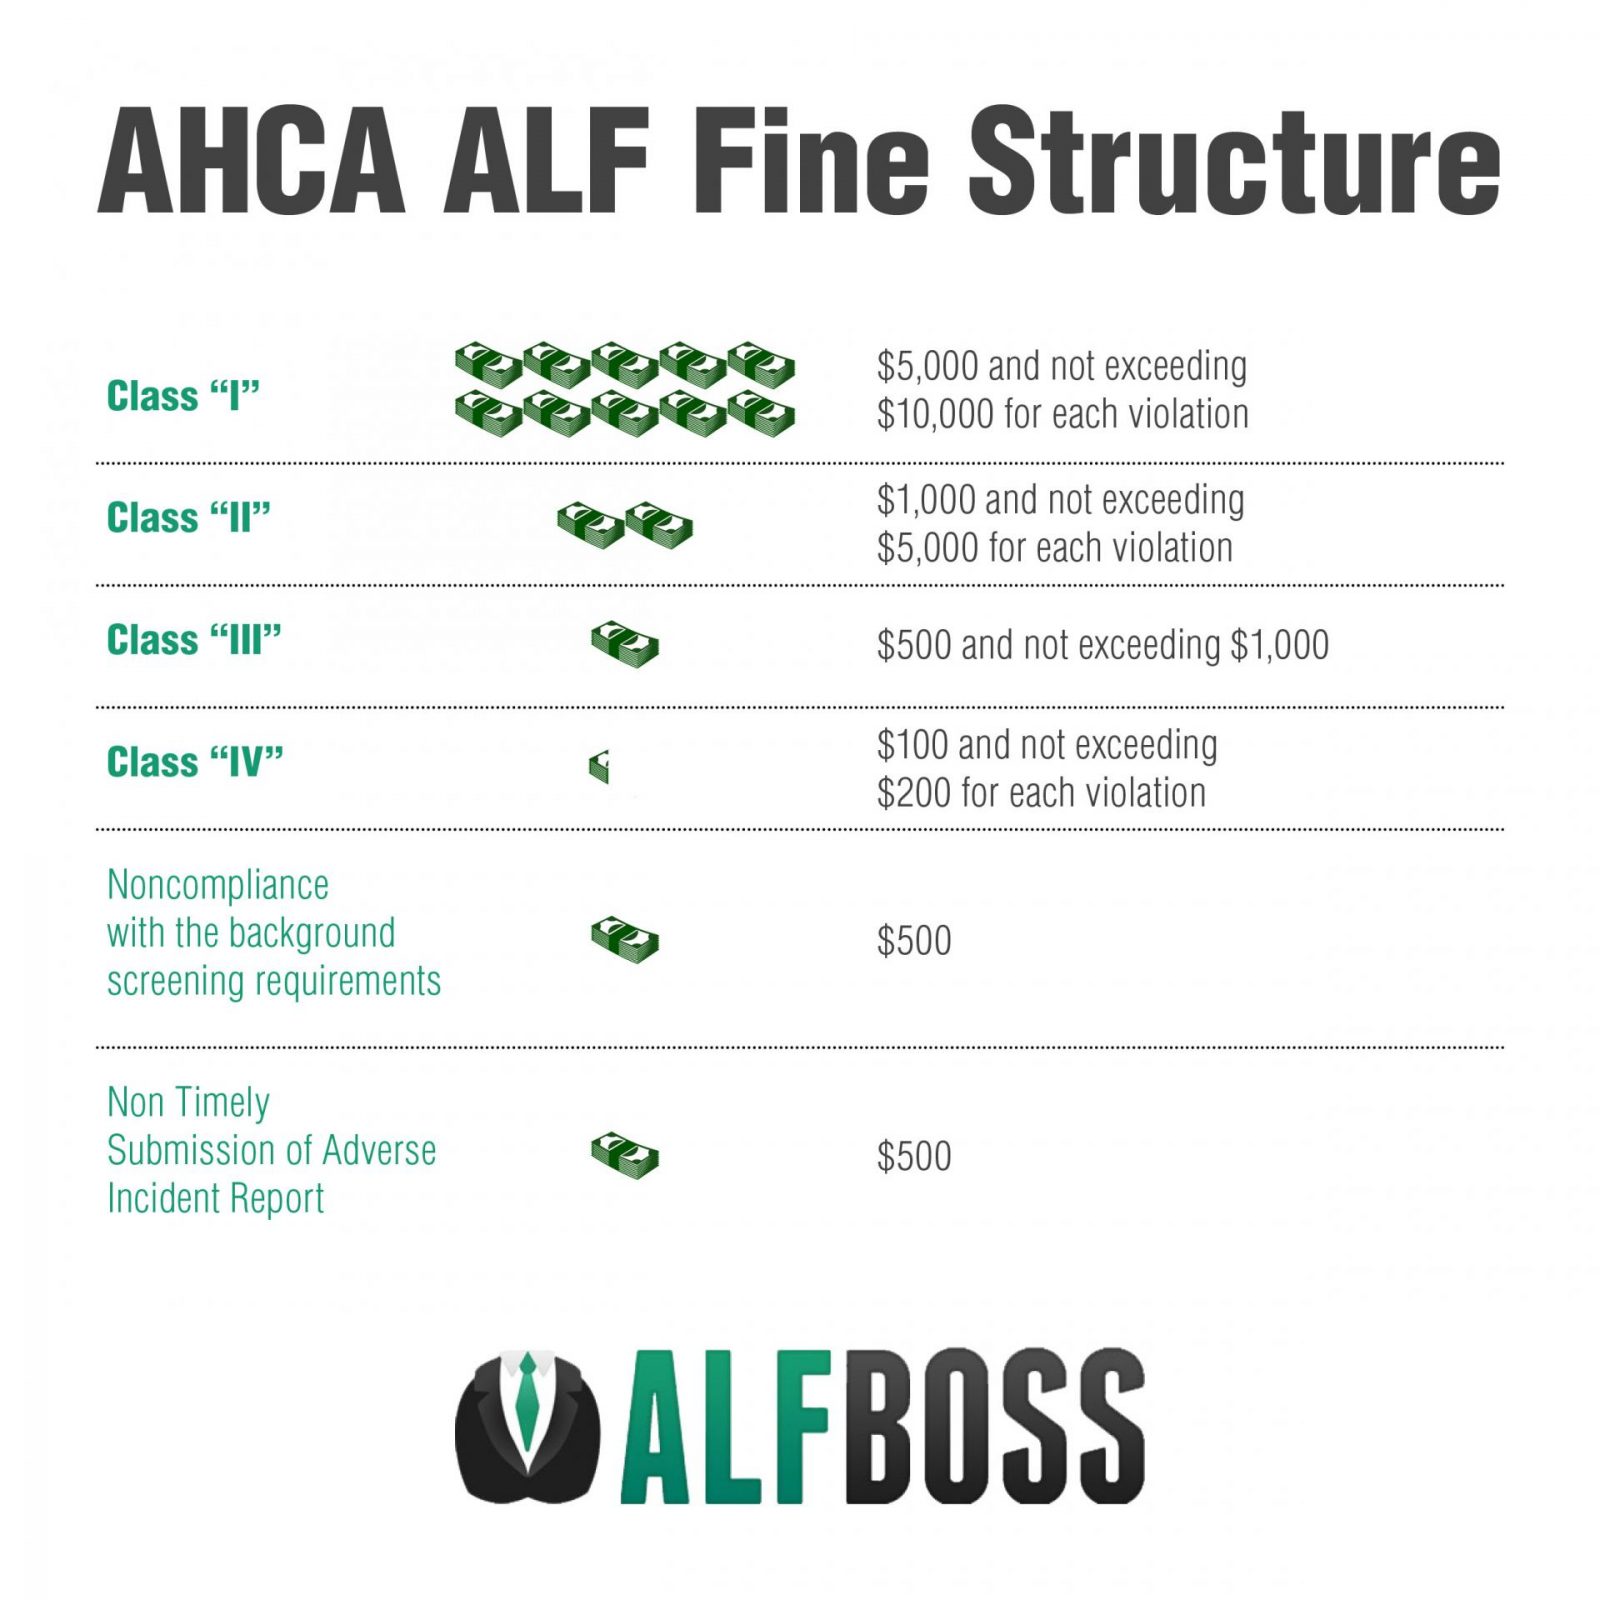 AHCA Fines